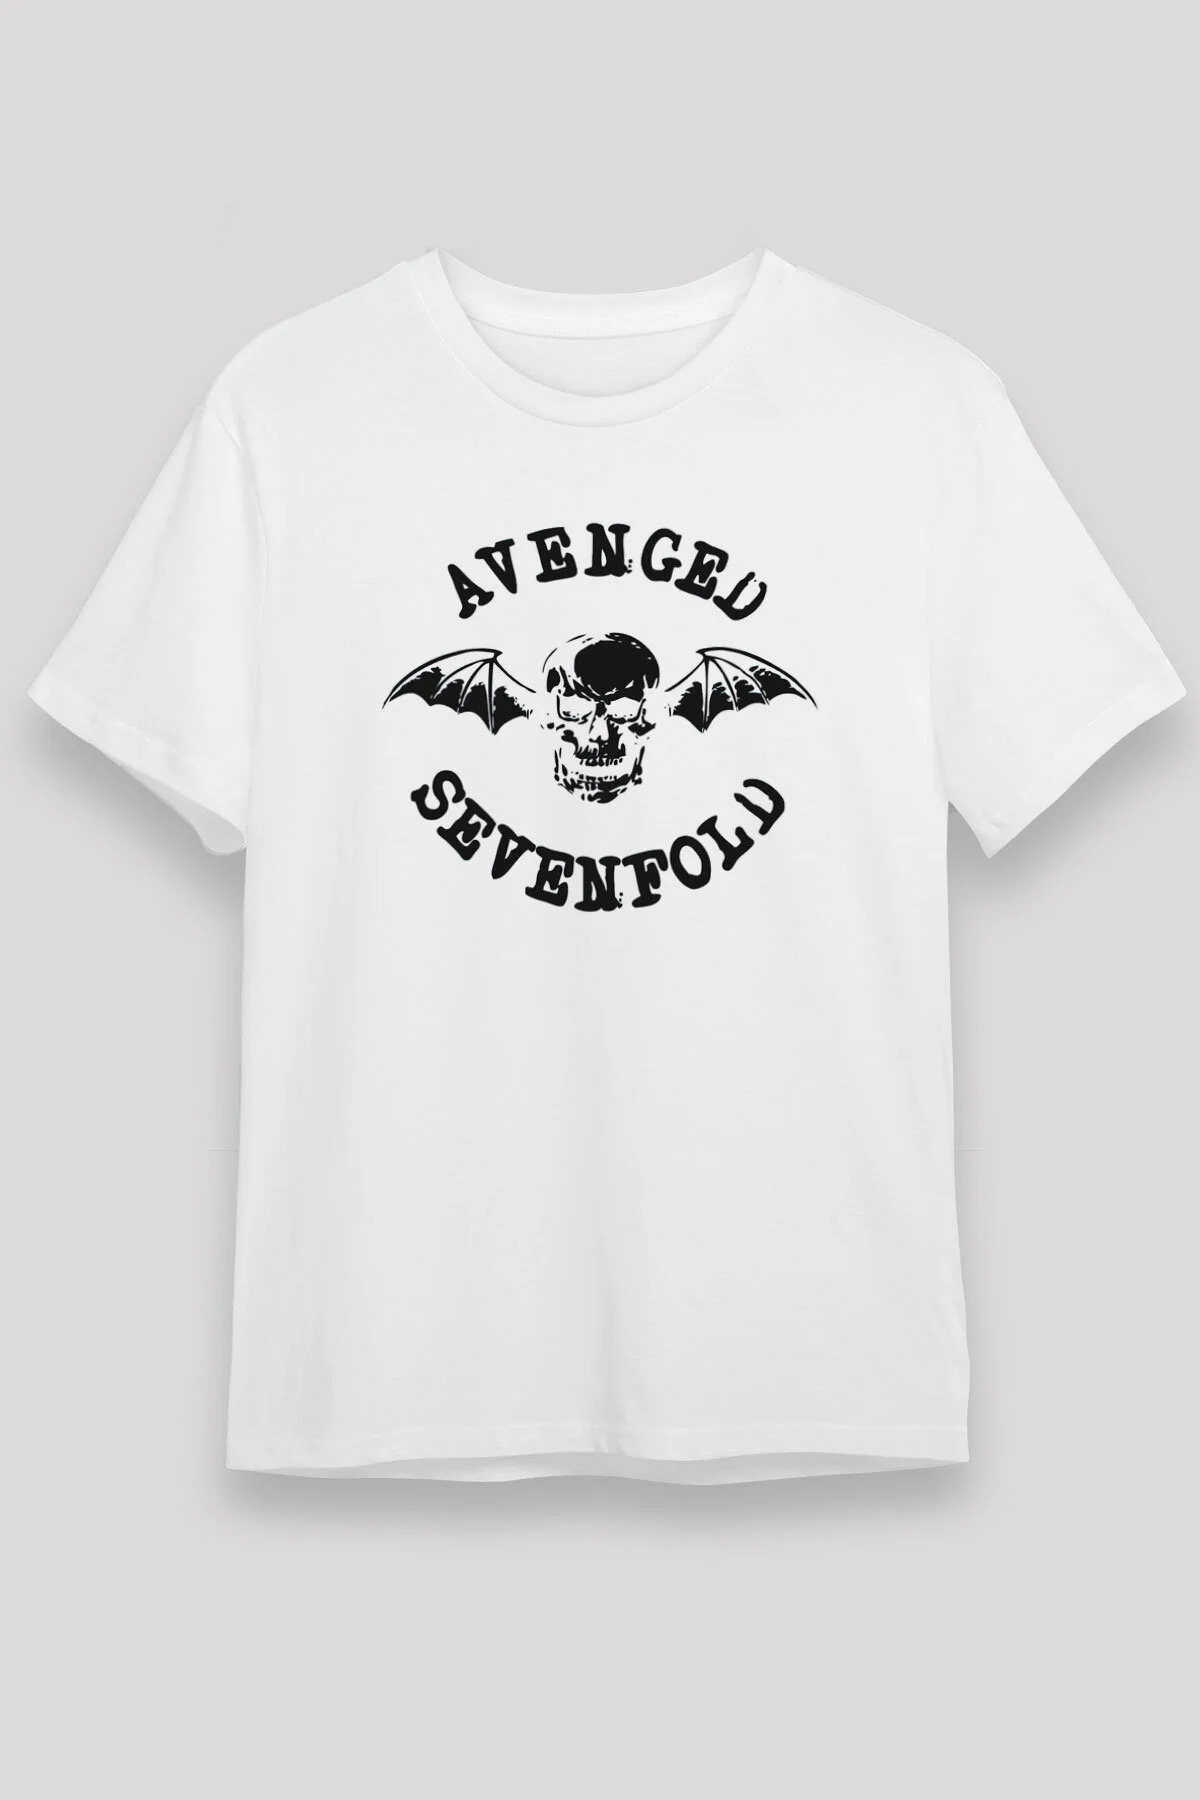 Avenged Sevenfold ,Music Band ,Unisex Tshirt 16